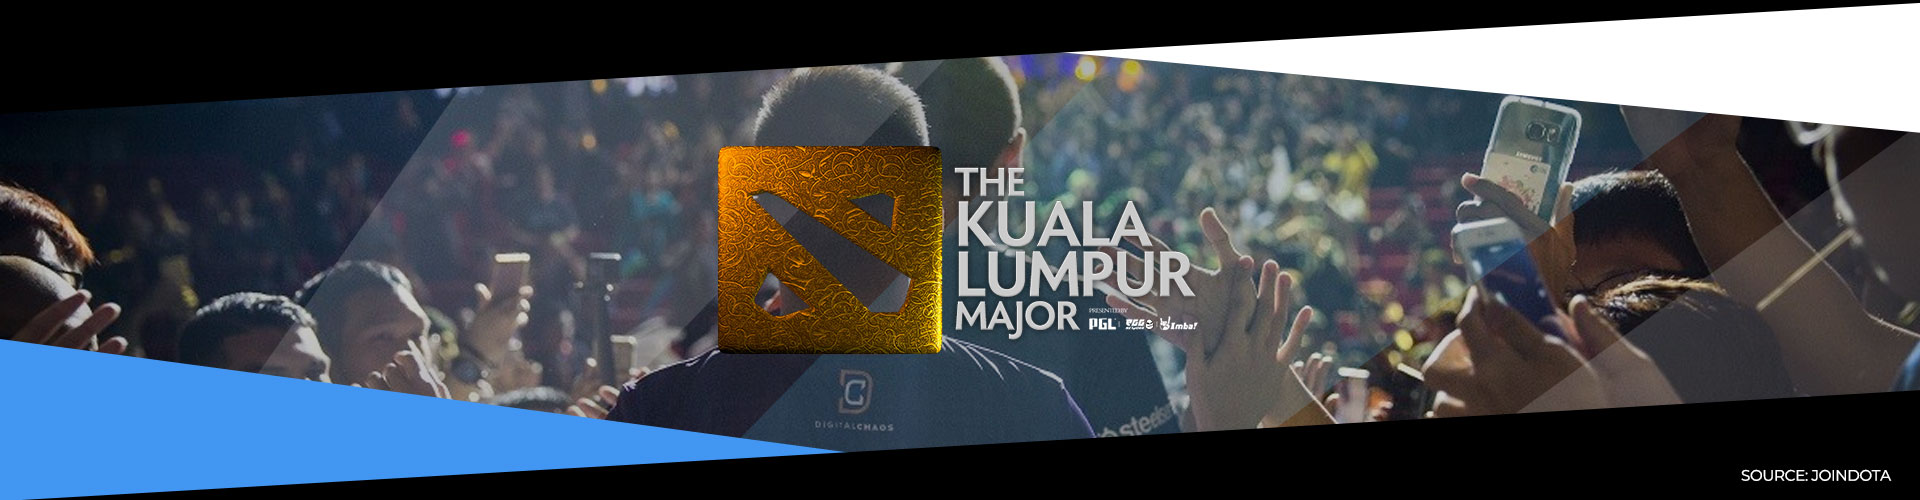 Eventsida om Kuala Lumpur Major och hur turneringen utspelade sig.